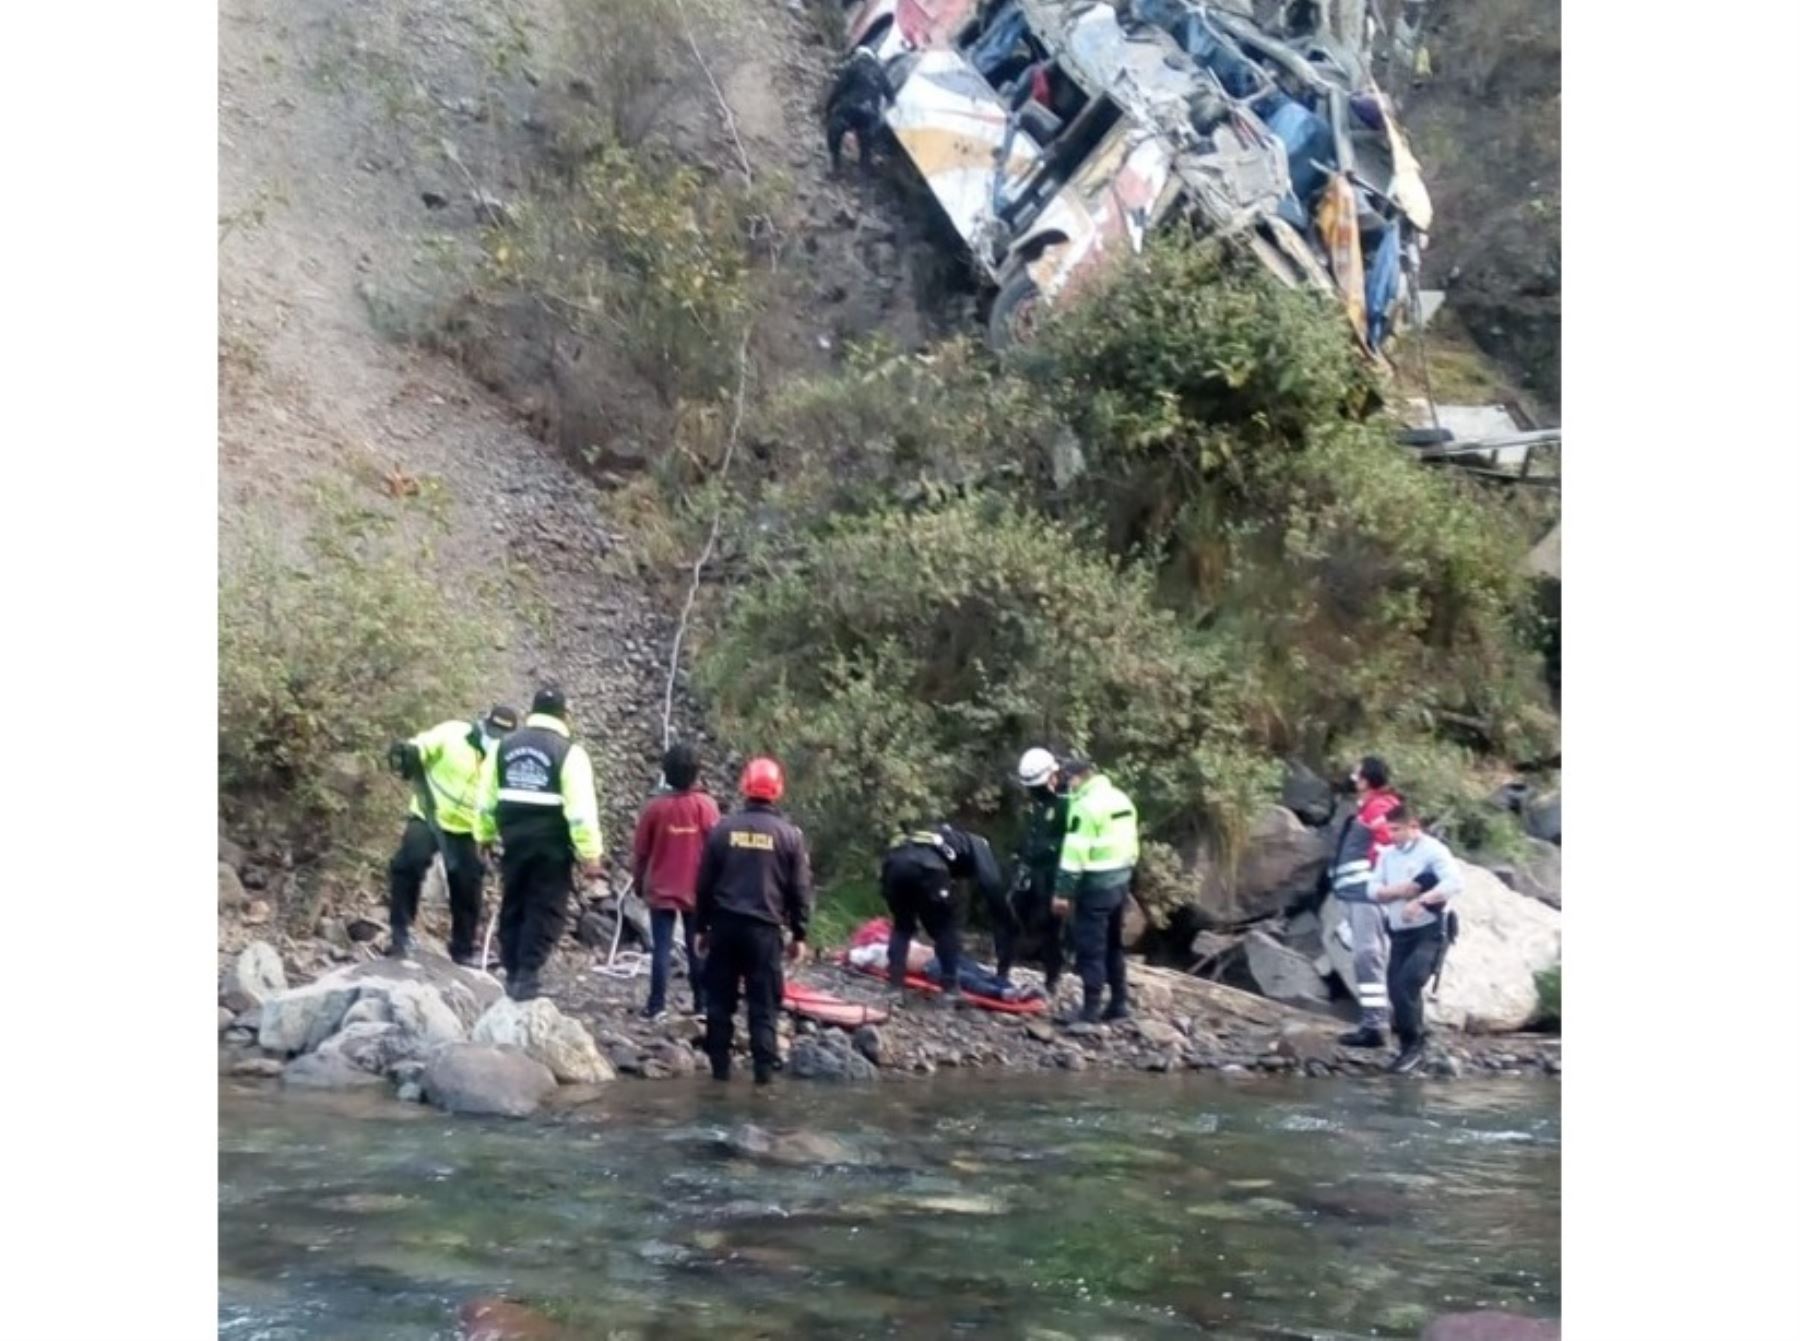 El ómnibus de la empresa León Express iba a excesiva velocidad al momento del trágico accidente de tránsito en la carretera Central que deja 21 muertos.